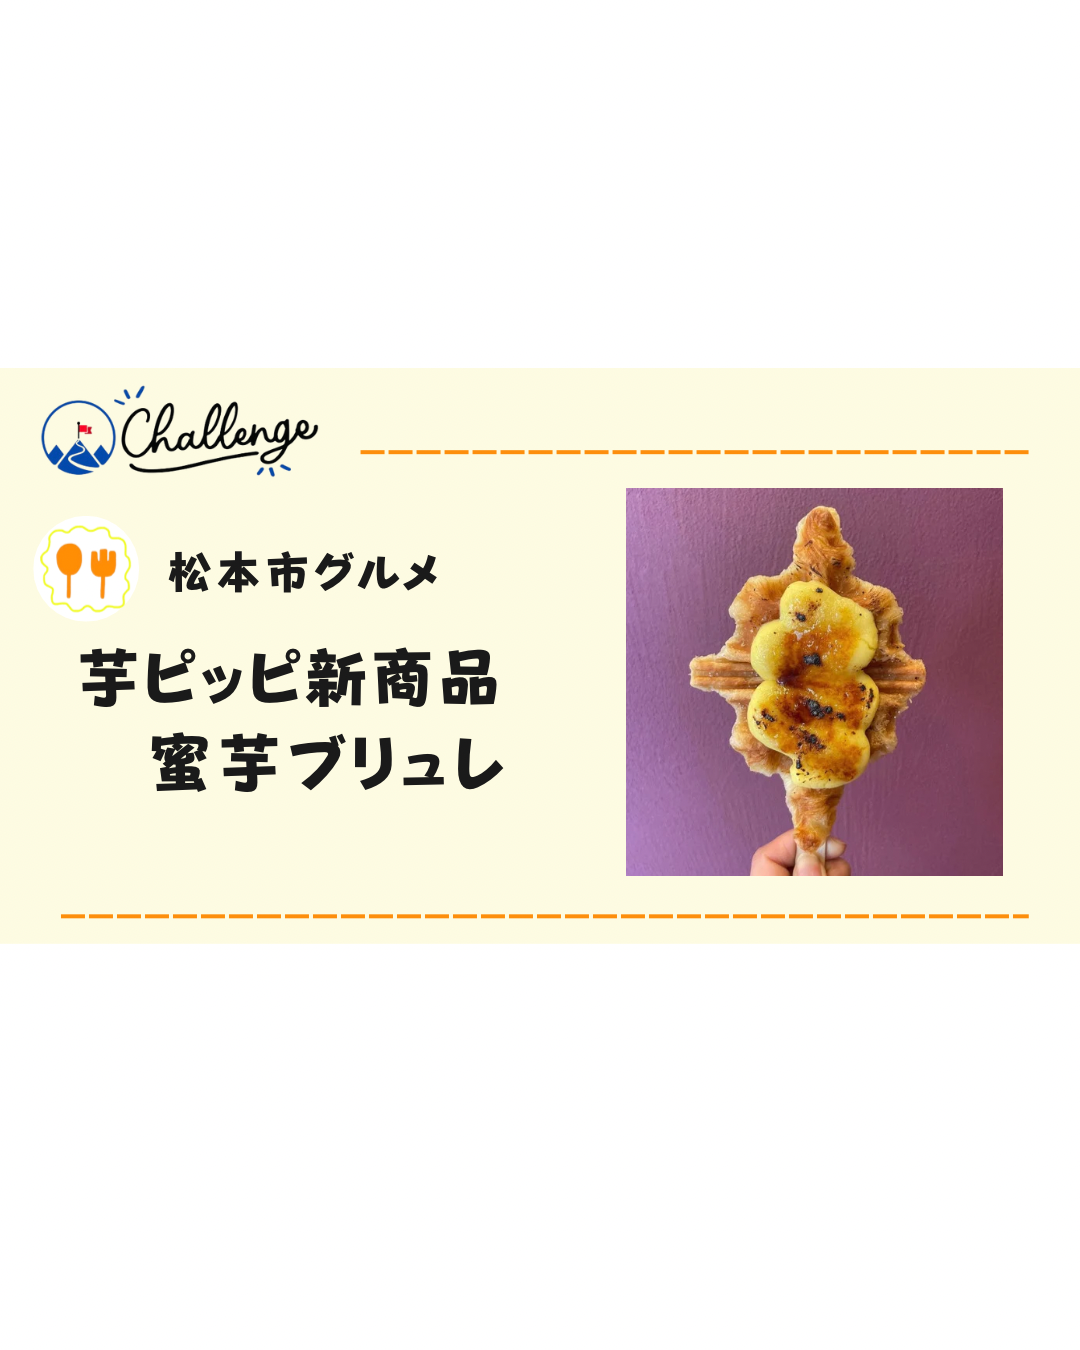 【1月新商品】松本の芋ピッピの新商品「クロワッフル蜜芋ブリュレ」が発売！